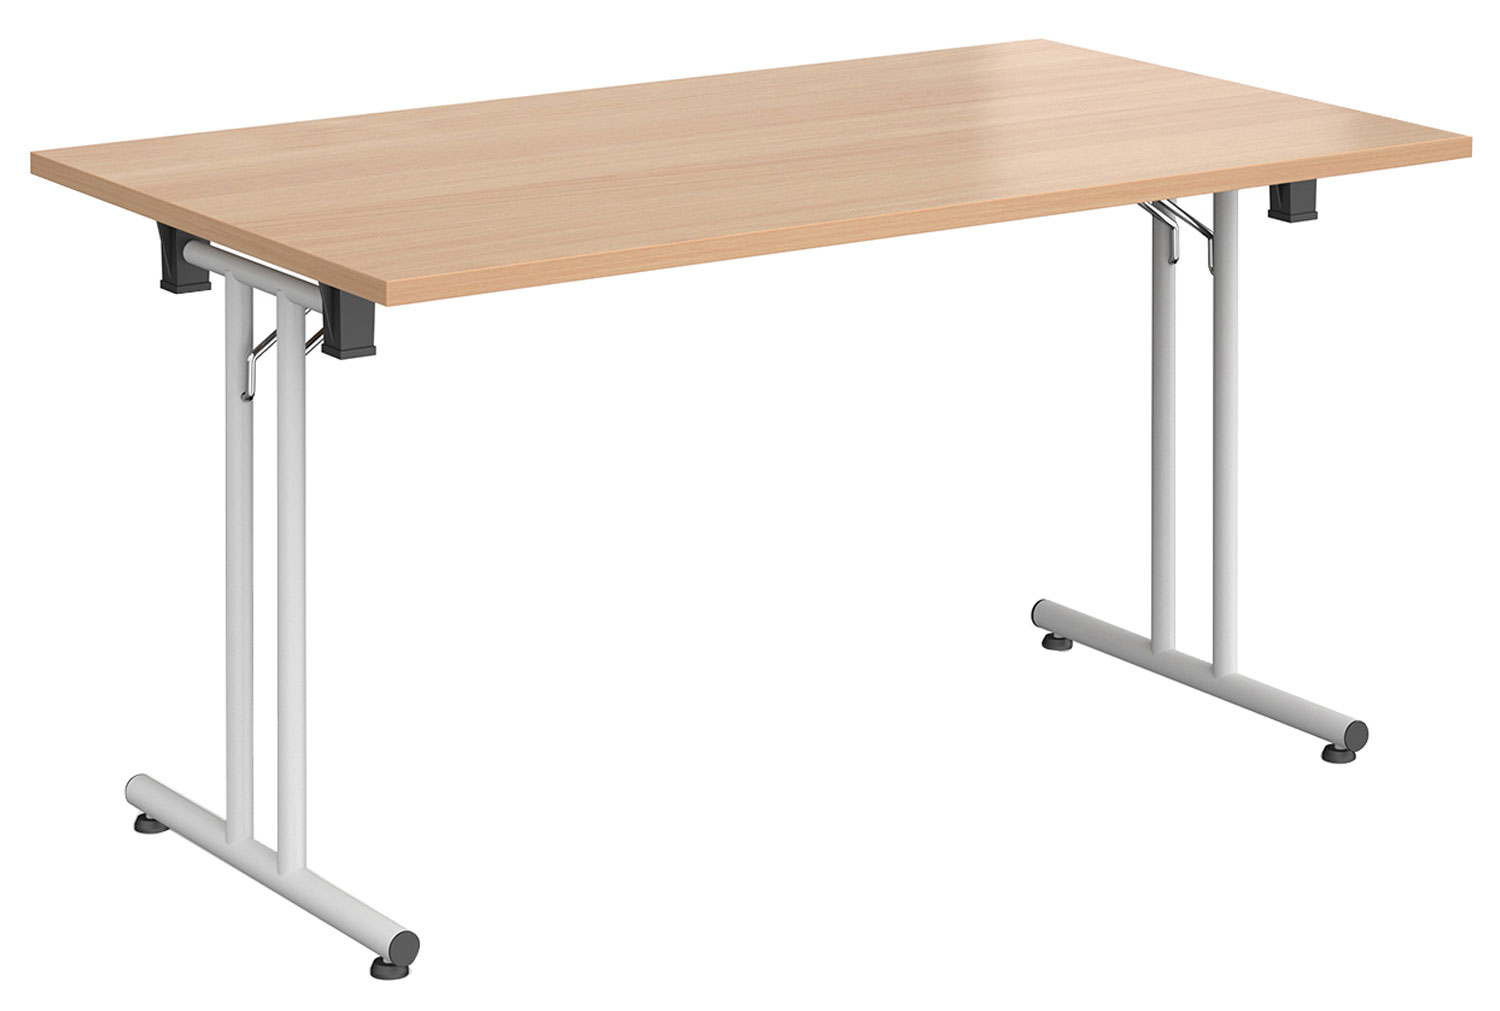 All Beech Rectangular Folding Table, 140wx80dx73h (cm)